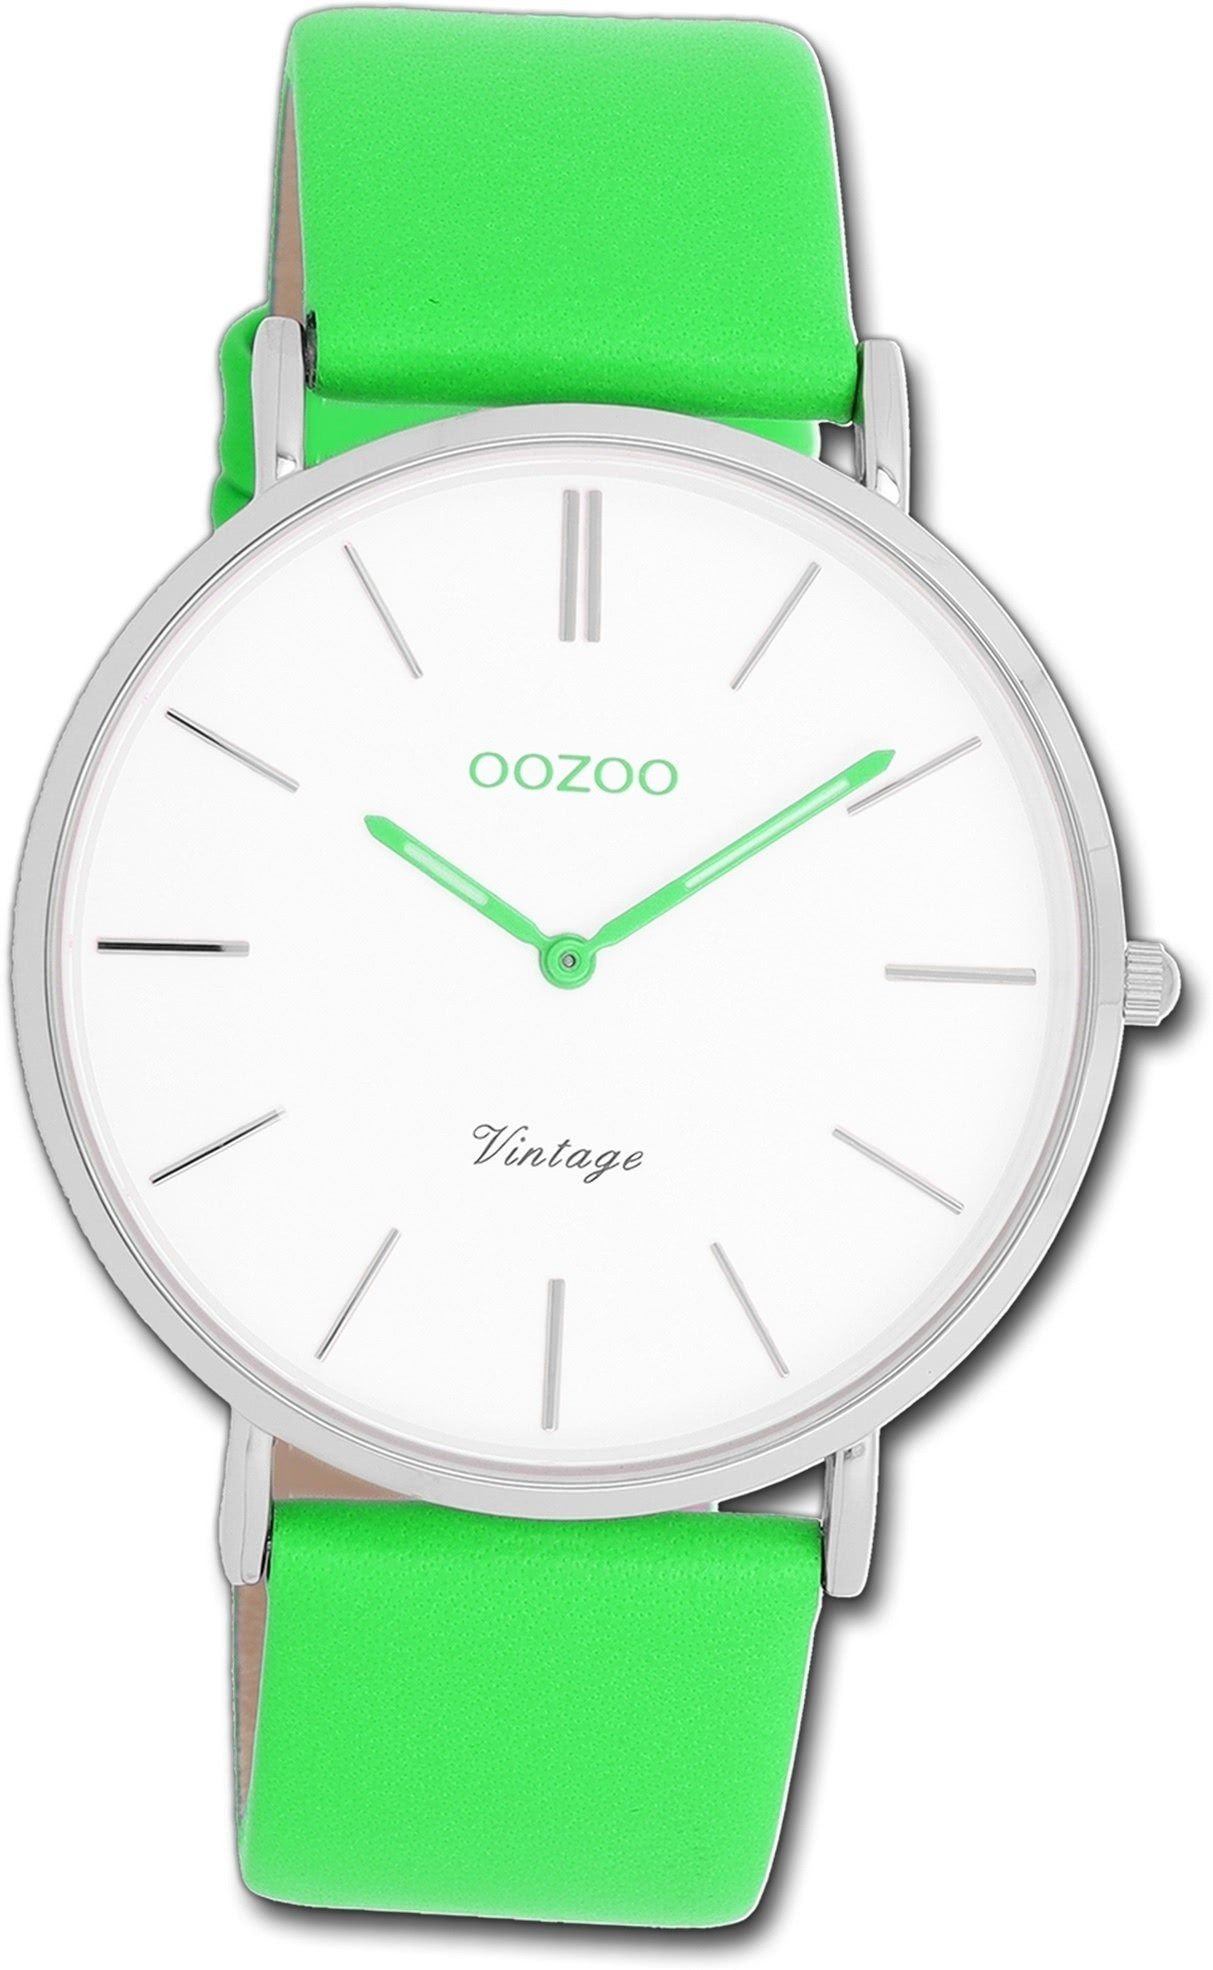 Oozoo grün, Armbanduhr Damen OOZOO Vintage grün, 40mm) Quarzuhr Gehäuse, rundes Damenuhr groß (ca. Lederarmband